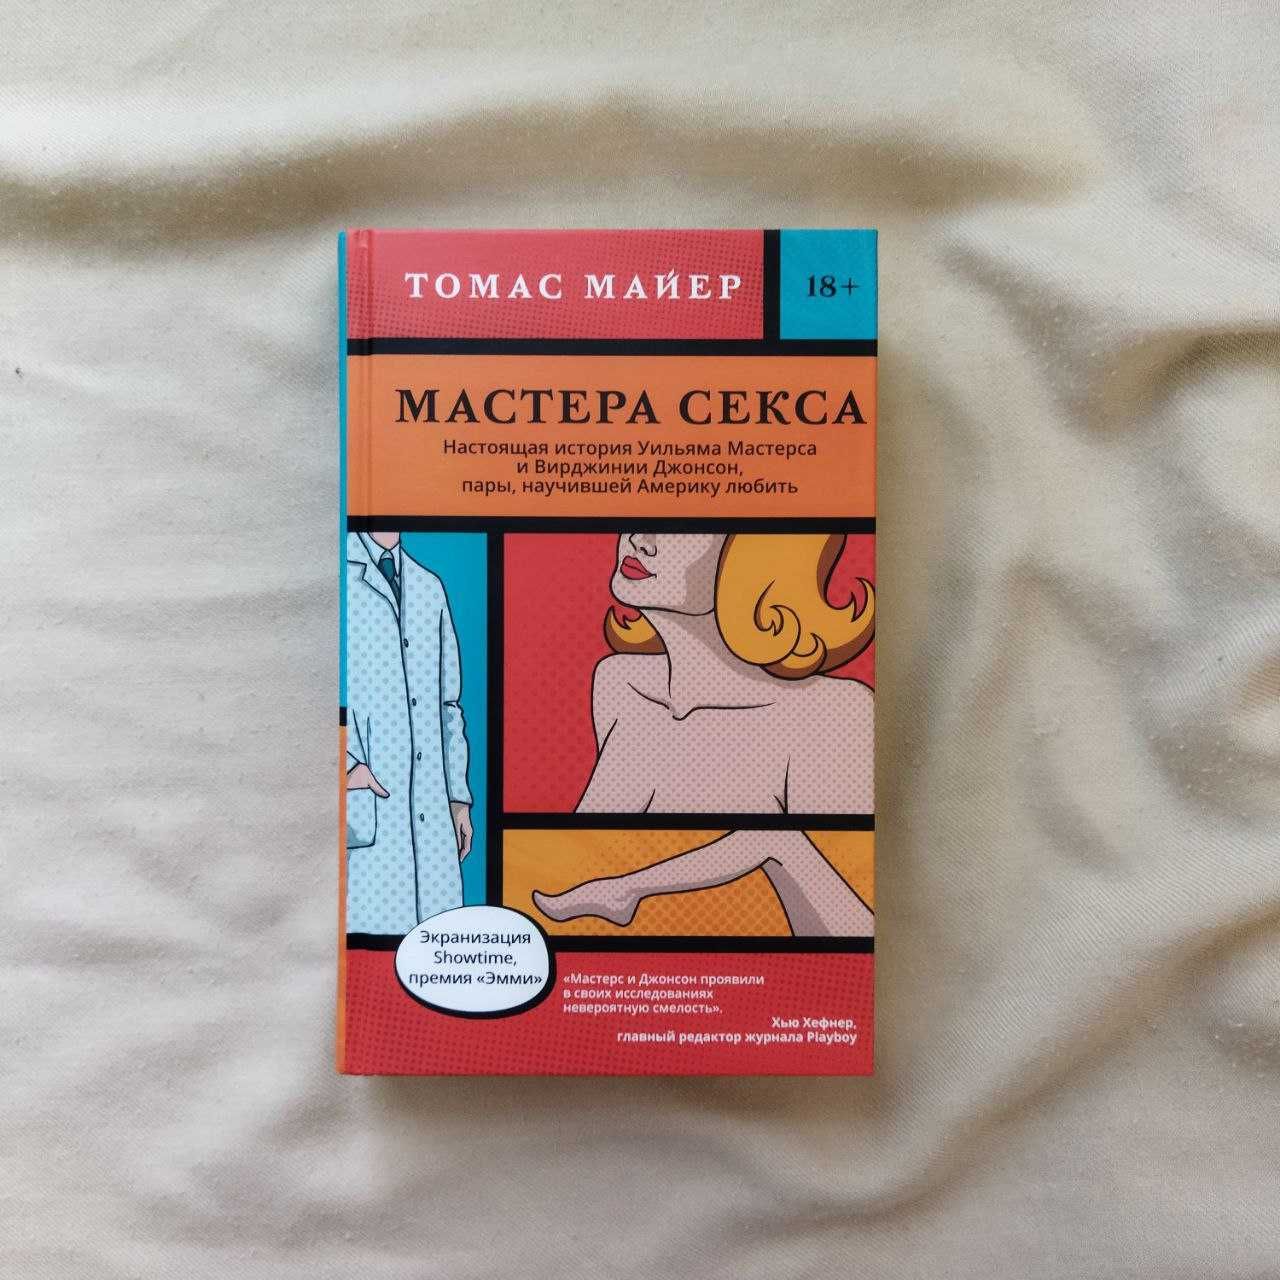 Мастера секса Томас Майер книга история биография медицина сексология